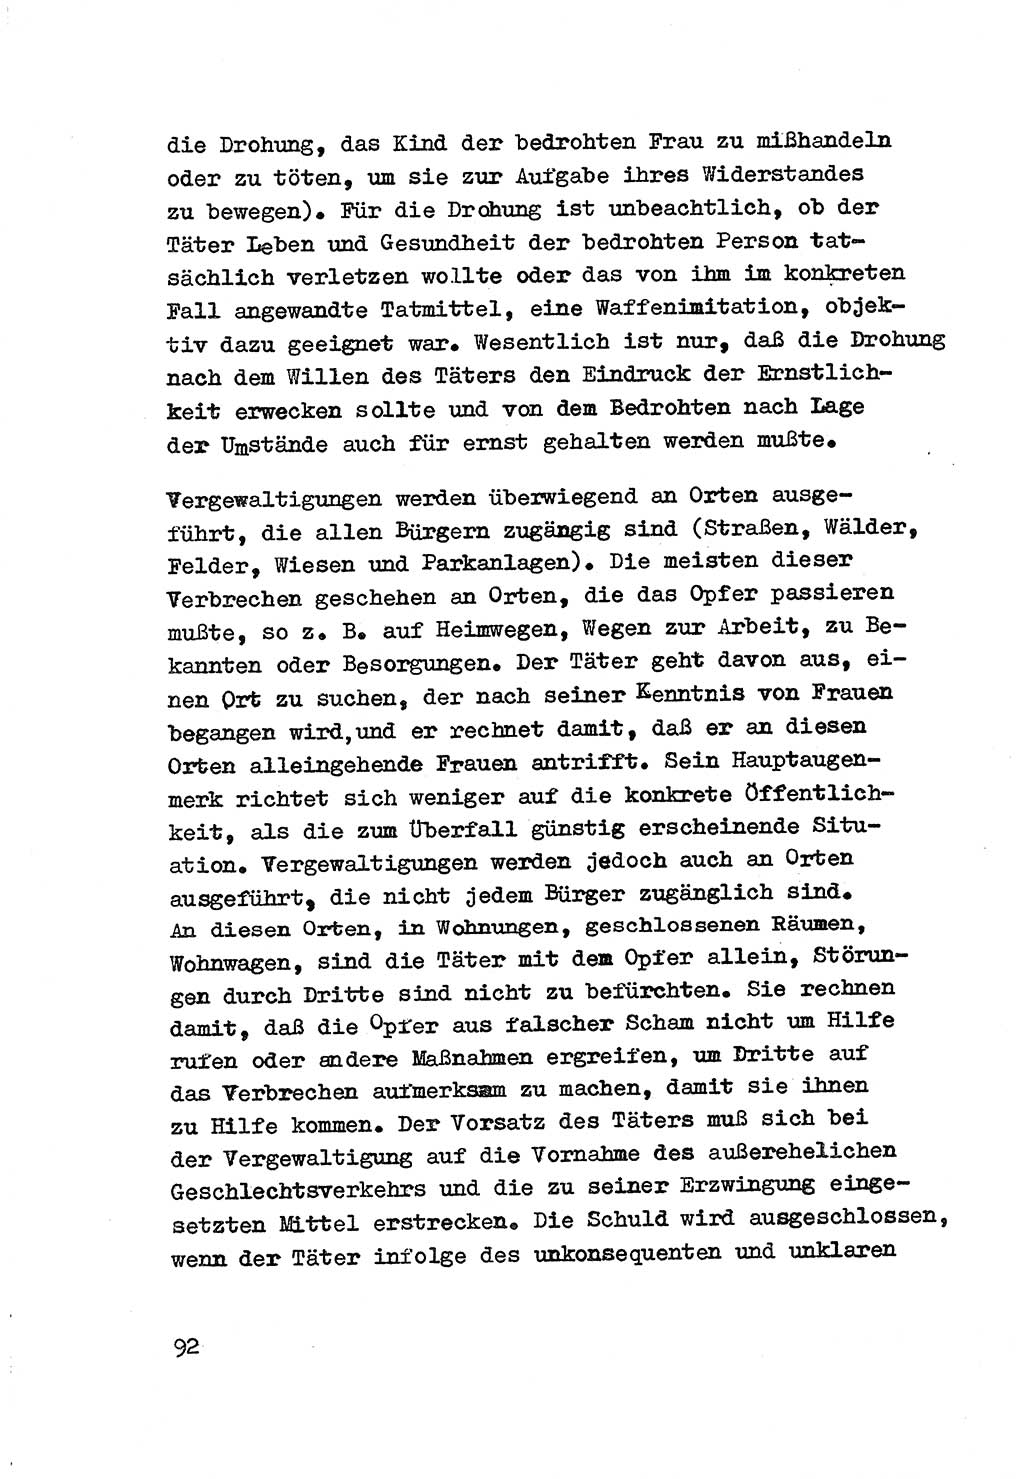 Strafrecht der DDR (Deutsche Demokratische Republik), Besonderer Teil, Lehrmaterial, Heft 3 1969, Seite 92 (Strafr. DDR BT Lehrmat. H. 3 1969, S. 92)